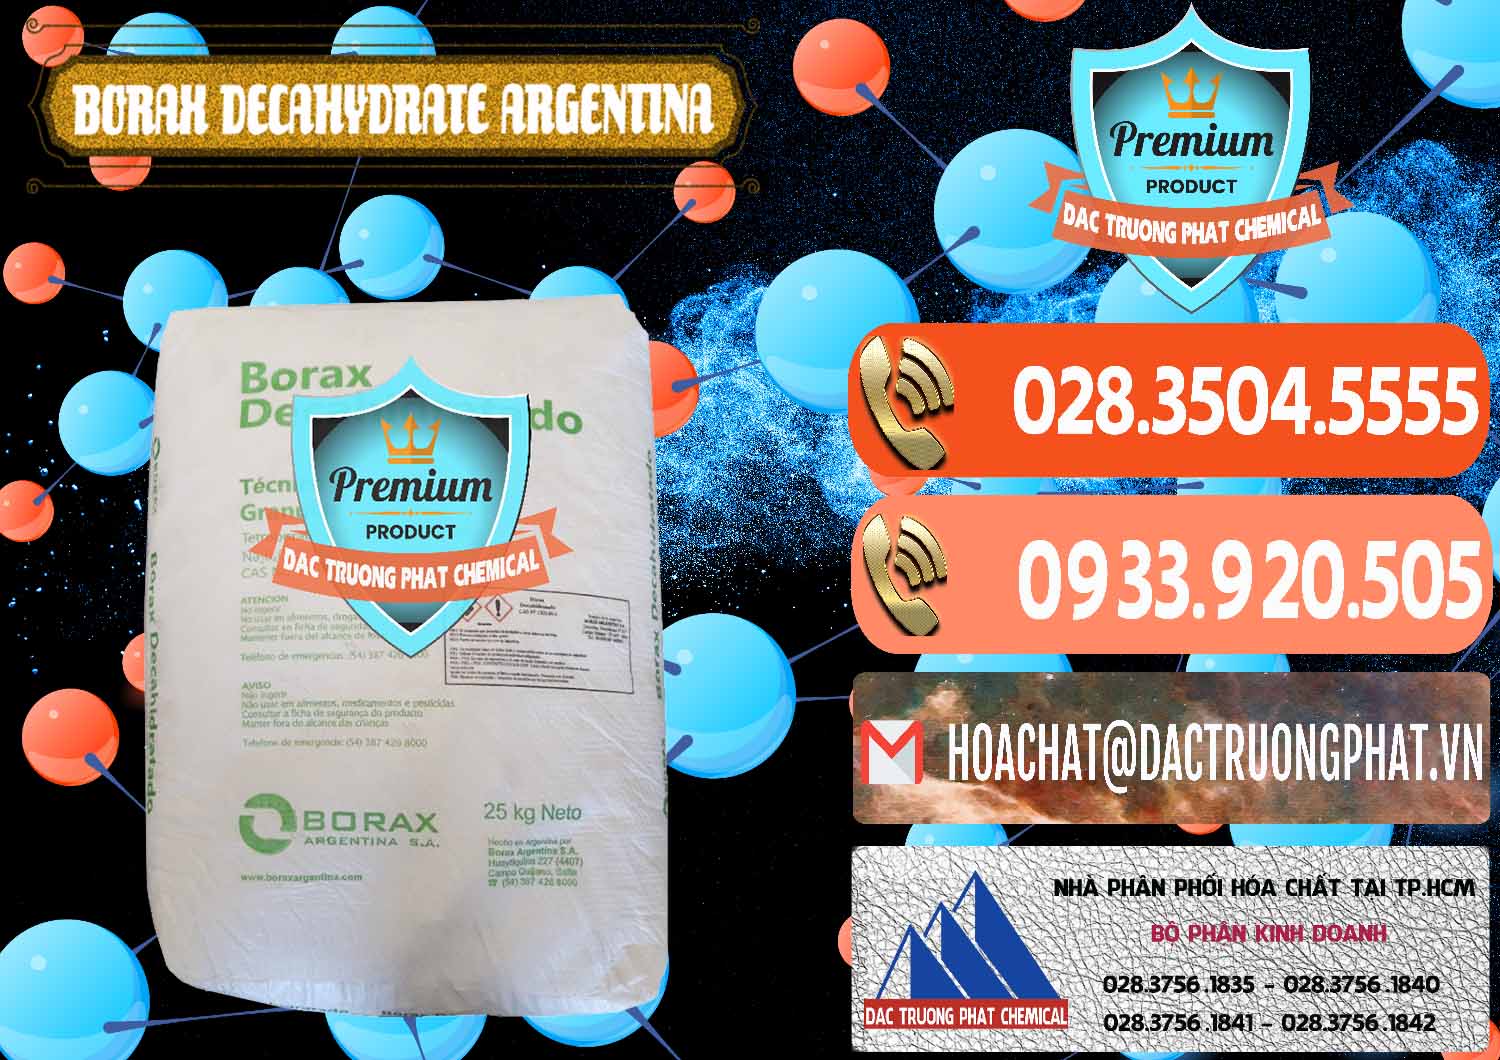 Nơi chuyên bán ( phân phối ) Borax Decahydrate Argentina - 0446 - Cty kinh doanh & phân phối hóa chất tại TP.HCM - hoachatmientay.com